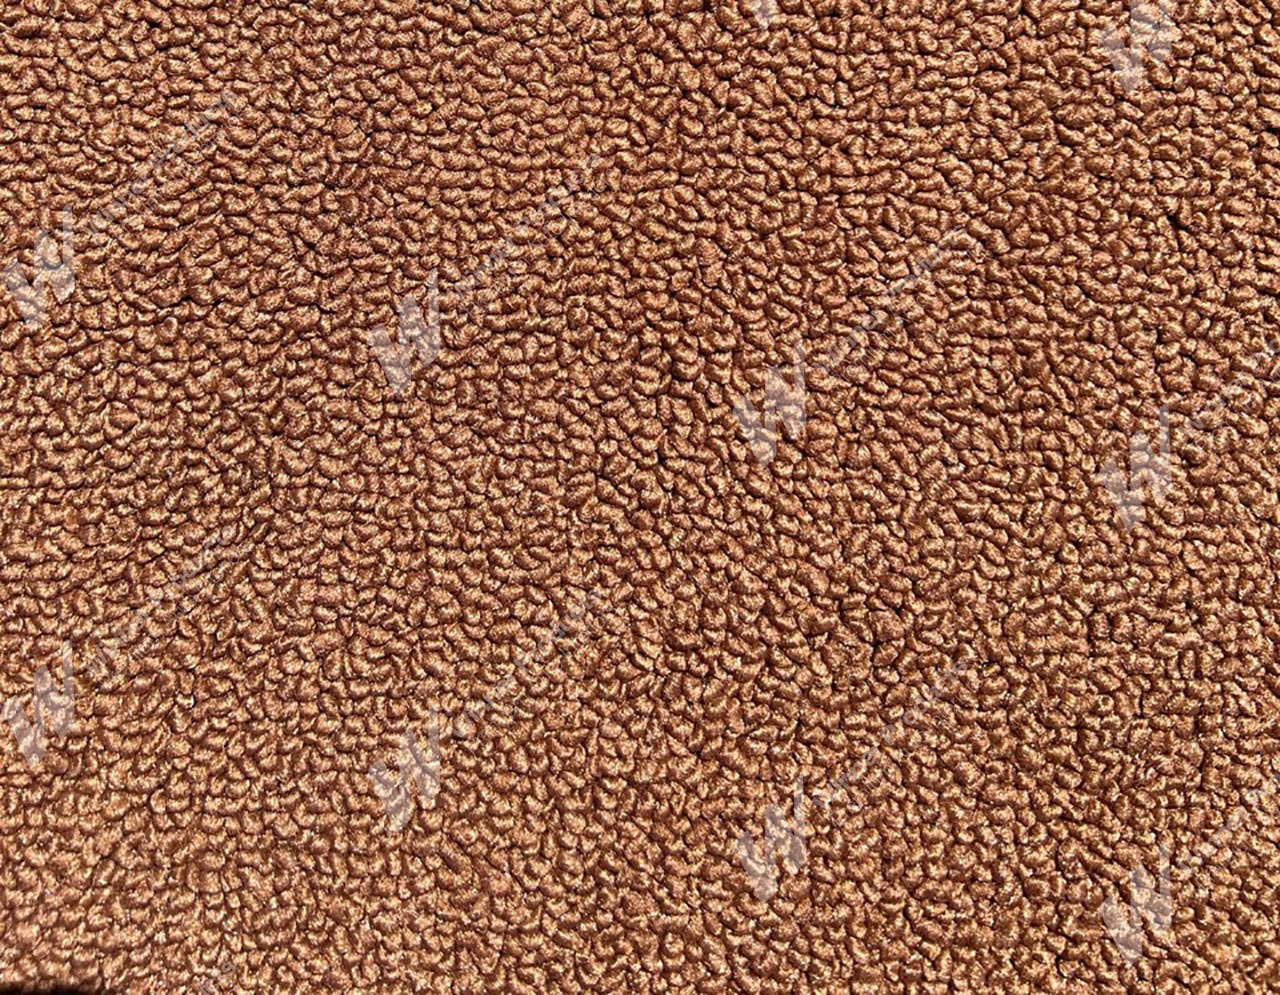 Holden Kingswood HJ Kingswood Ute 67V Tan Carpet (Image 1 of 1)